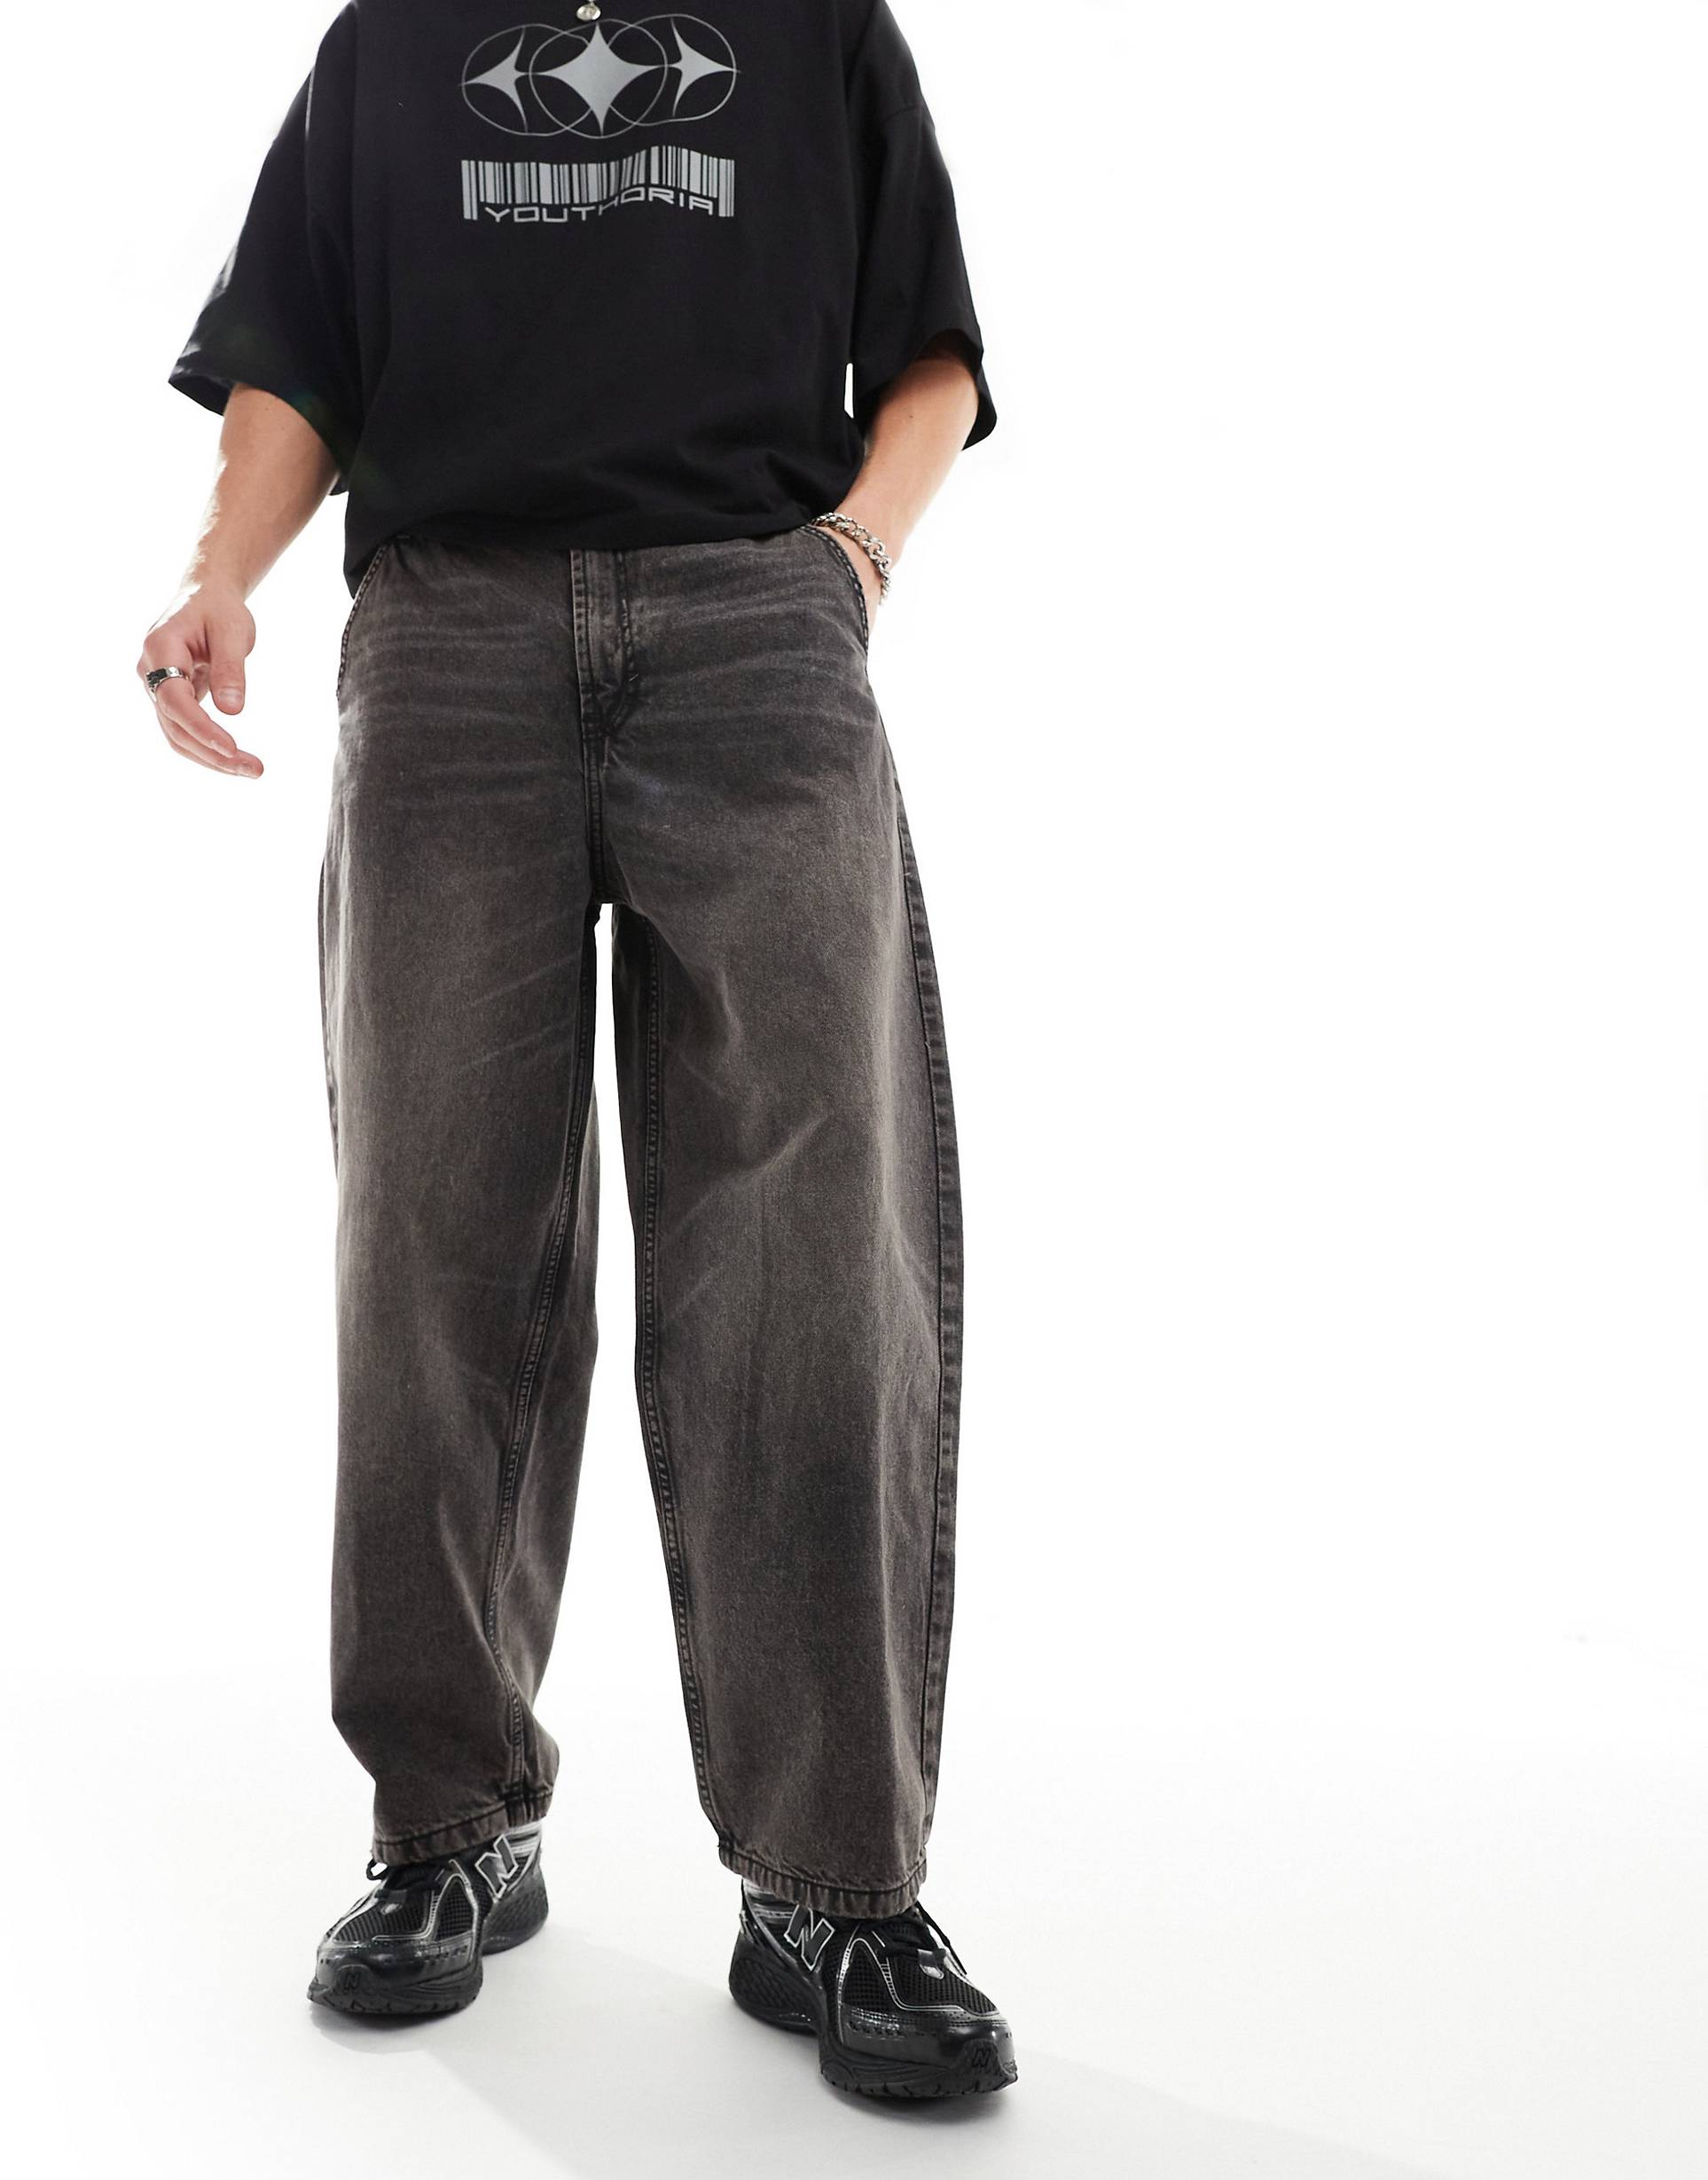 Джинсы Bershka Skater Fit Casted, коричневый джинсы bershka комфортные 40 размер